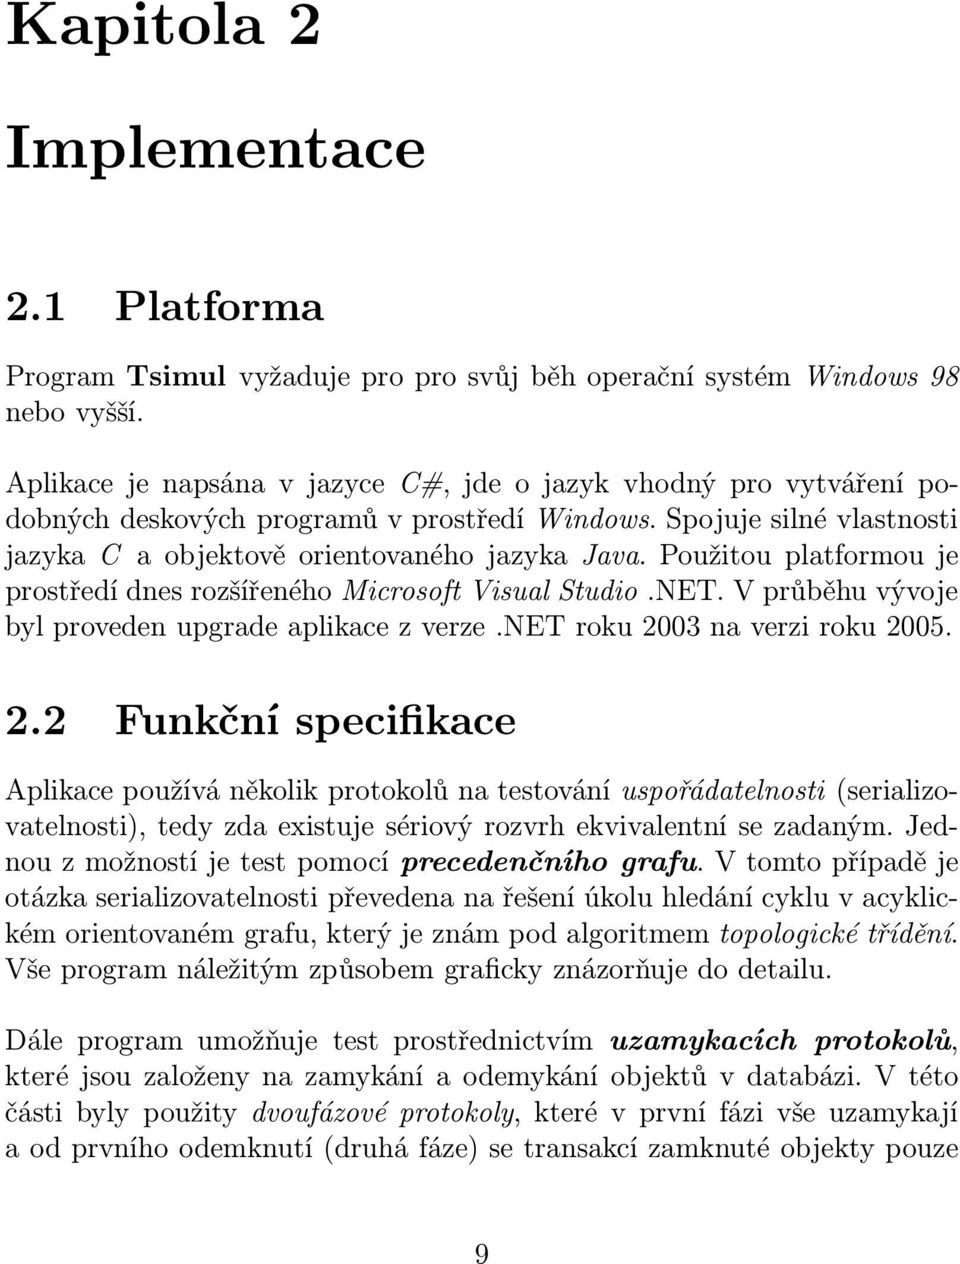 Použitou platformou je prostředí dnes rozšířeného Microsoft Visual Studio.NET. V průběhu vývoje bylprovedenupgradeaplikacezverze.netroku2003naverziroku2005. 2.